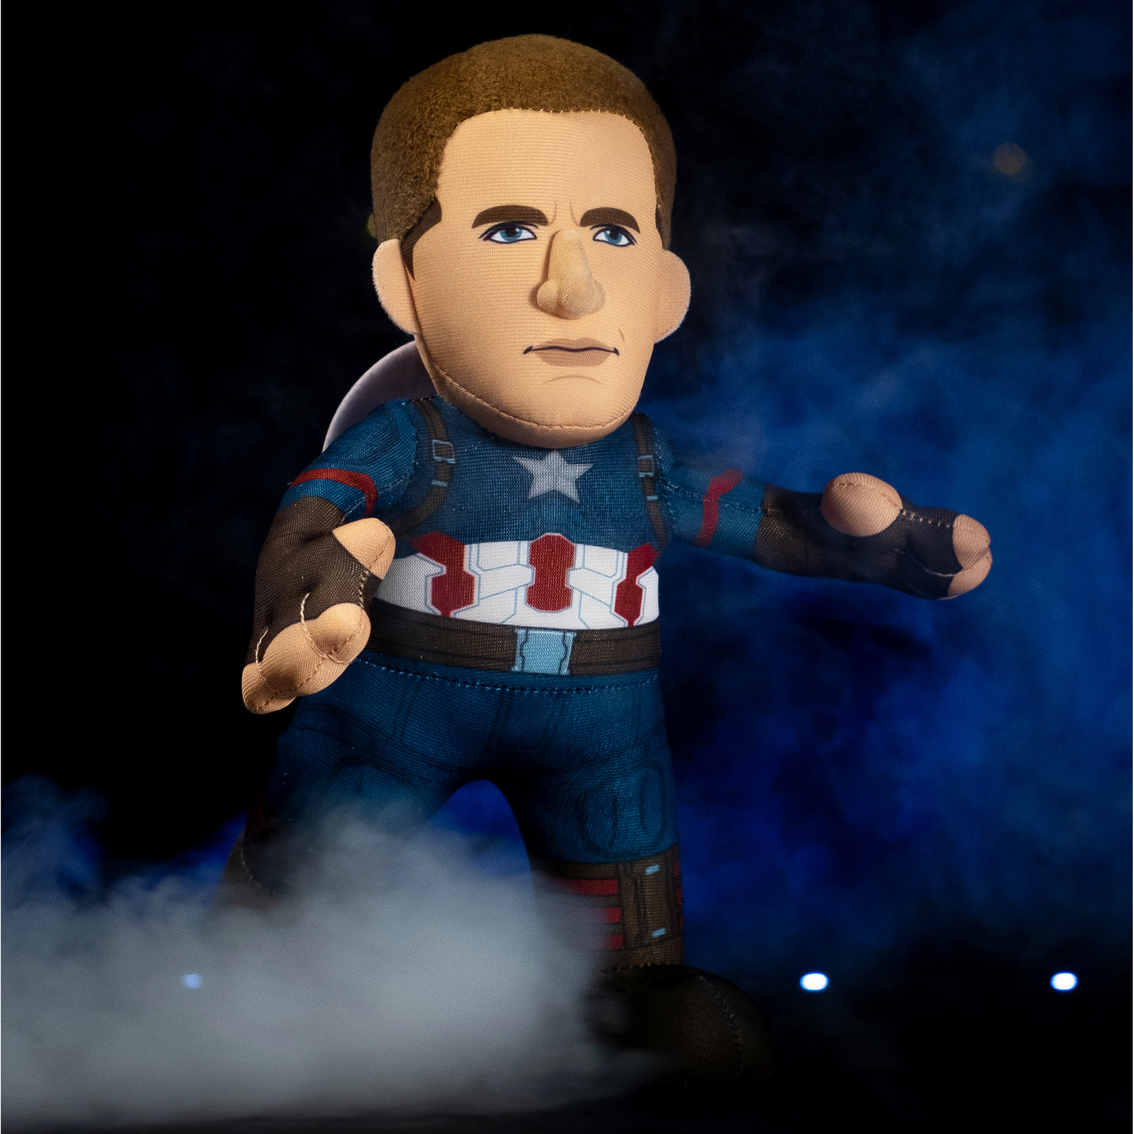 Bleacher Creatures Marvel Captain America 10 in. Plush Figure - Image 6 of 7